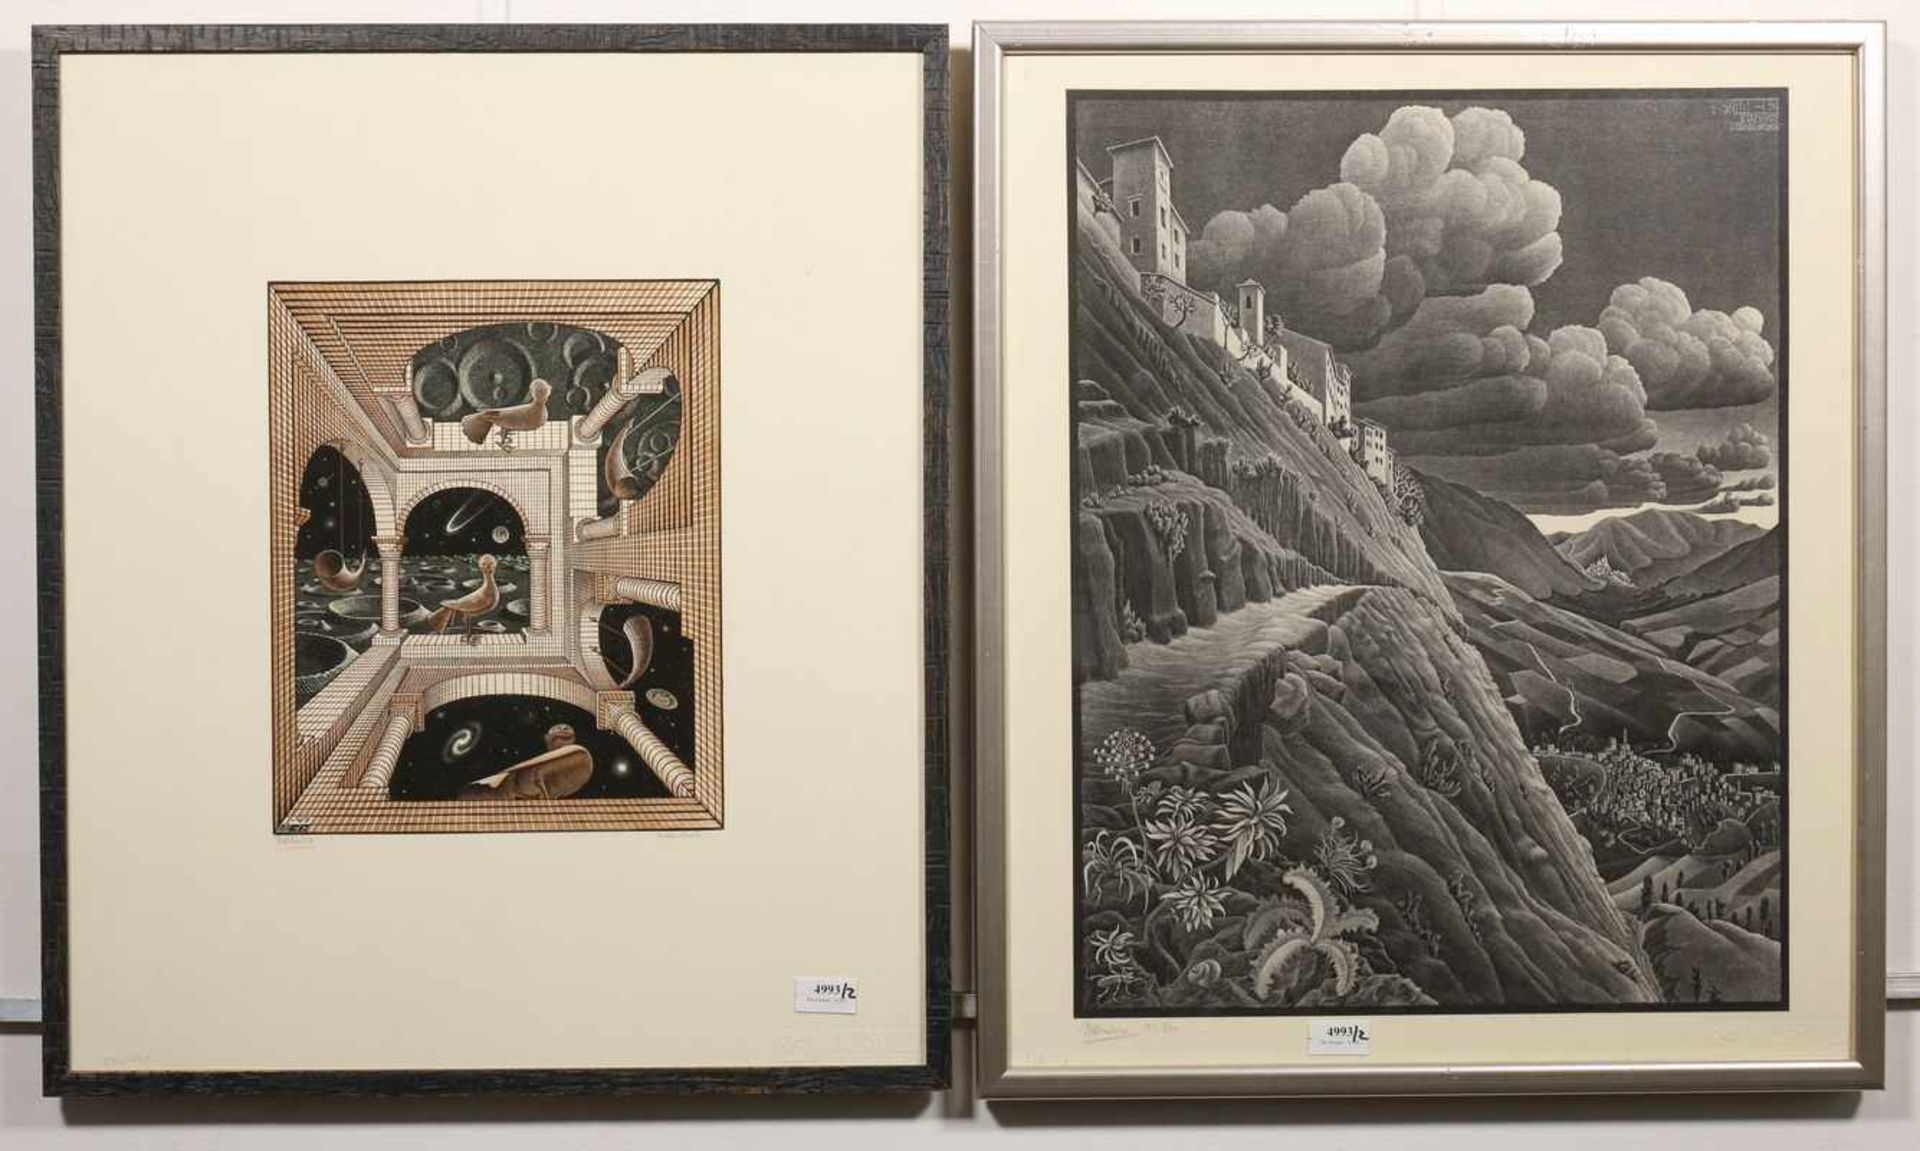 Naar M.C. EscherCastrovalva / Andere wereld; tweemaal druk; ca. 60 x 50 cm.; uitgegeven door de M.C.